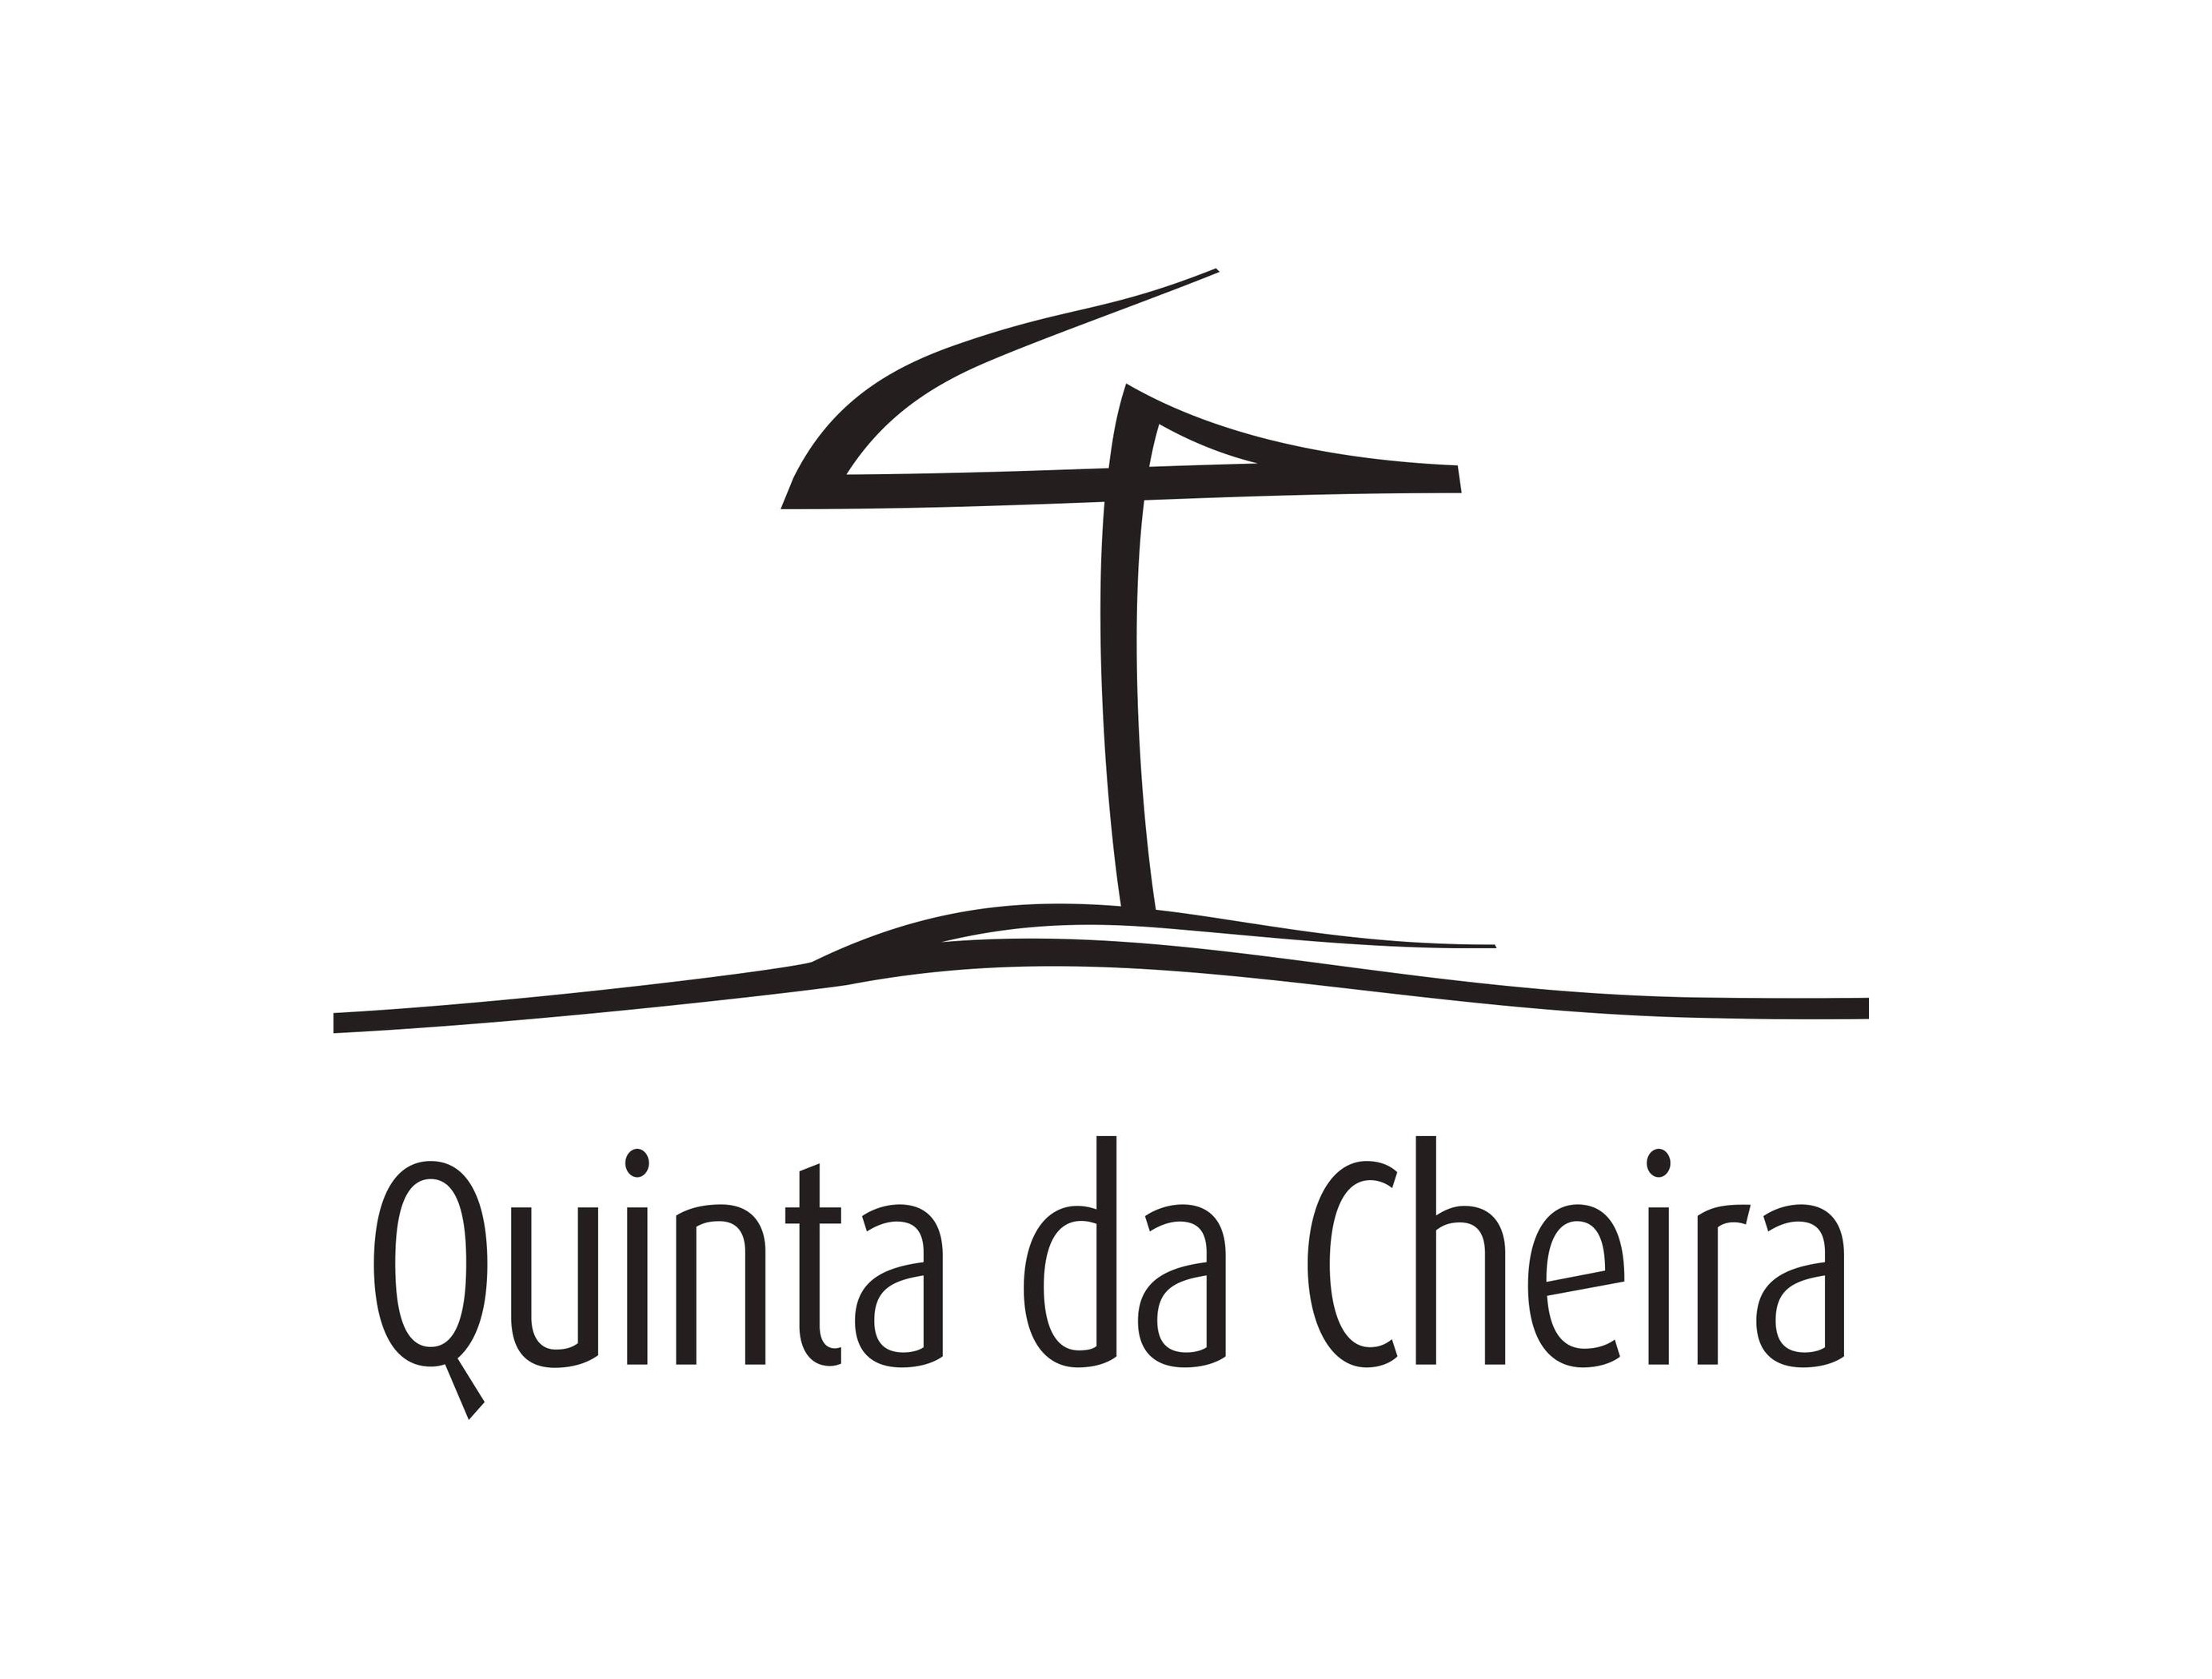 Quinta da Cheira